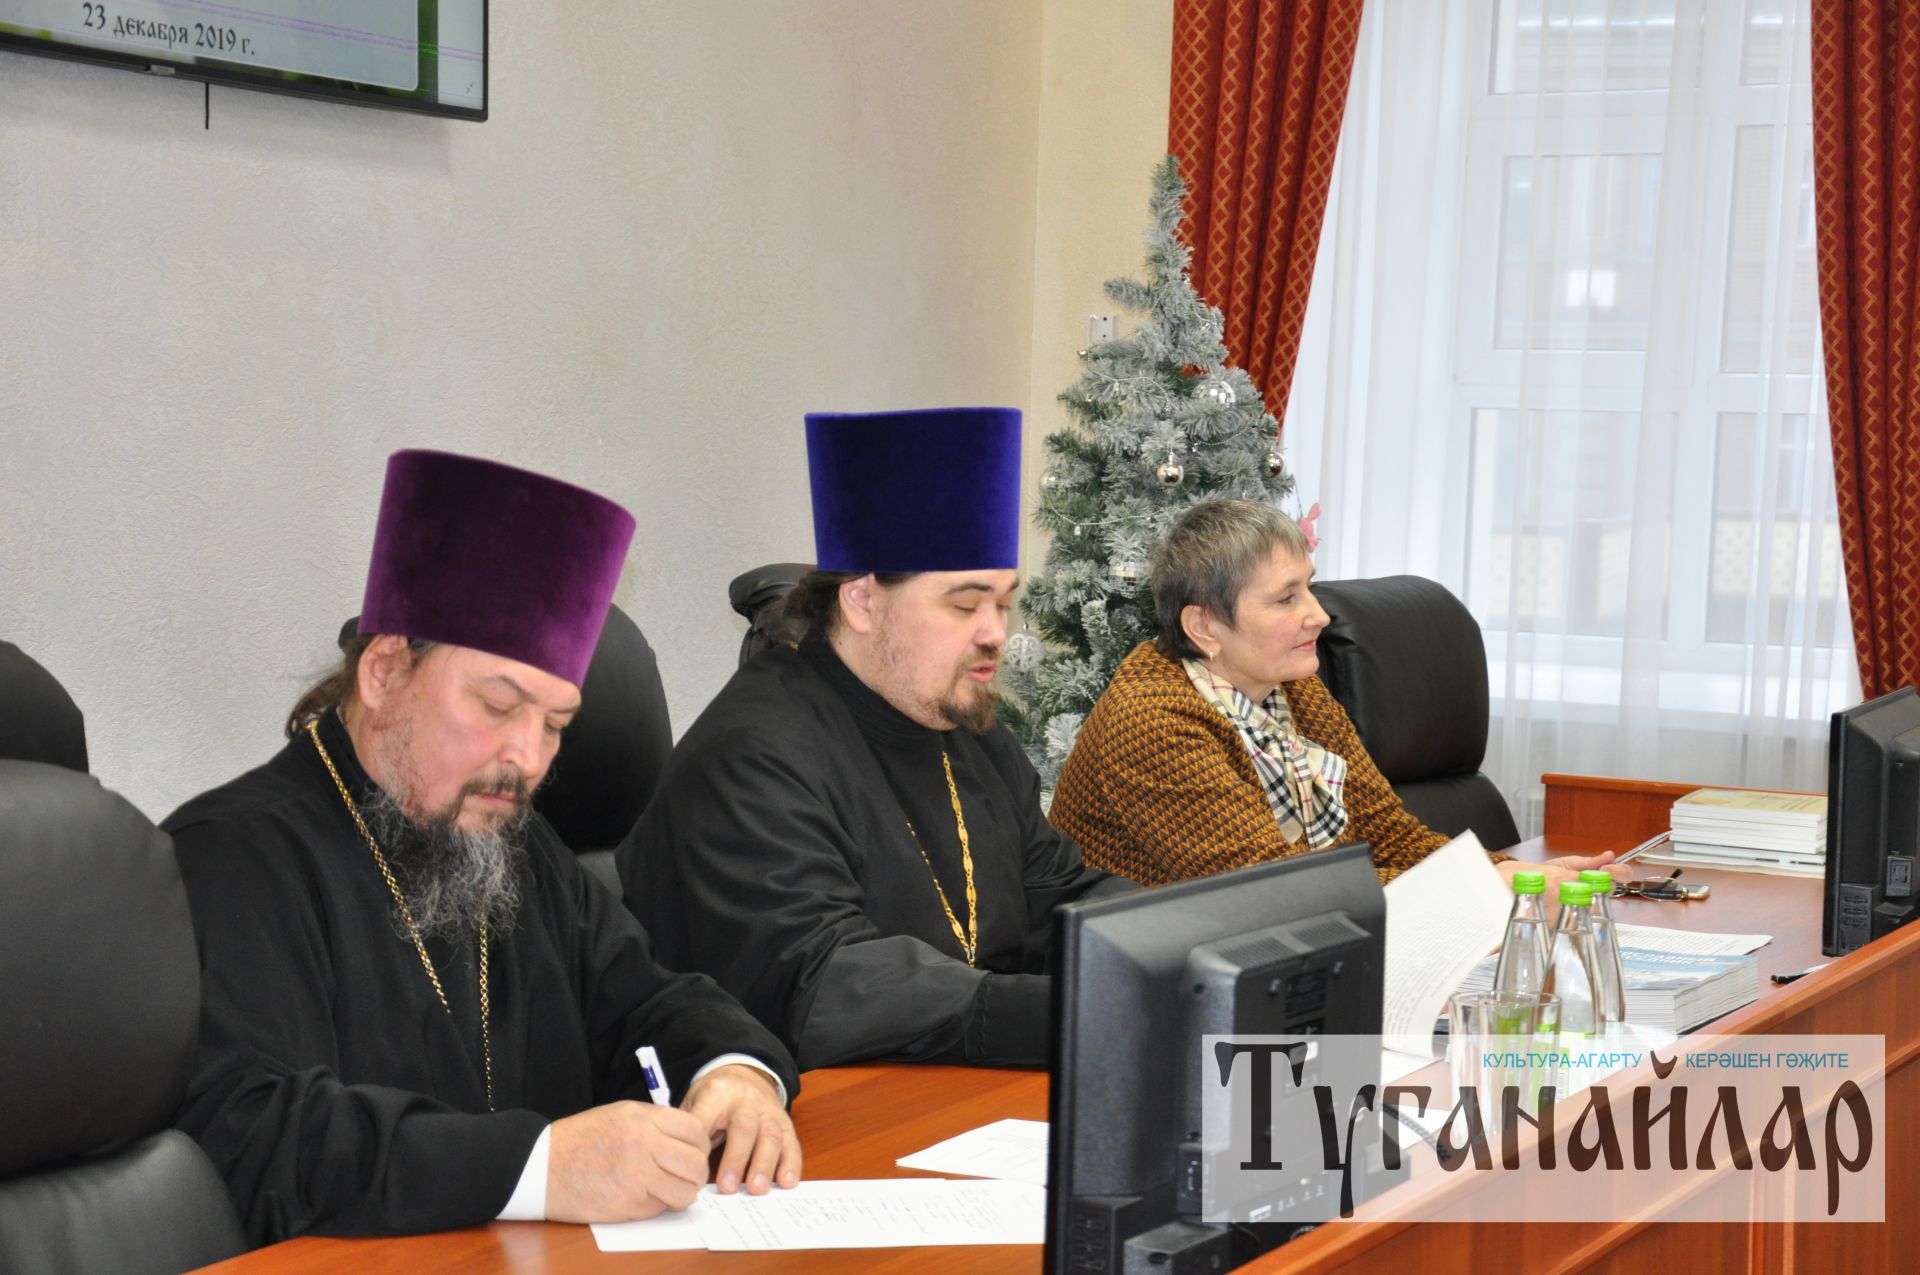 Кряшенская общественность отметила 30-летие со дня возобновления службы на церковно-кряшенском языке